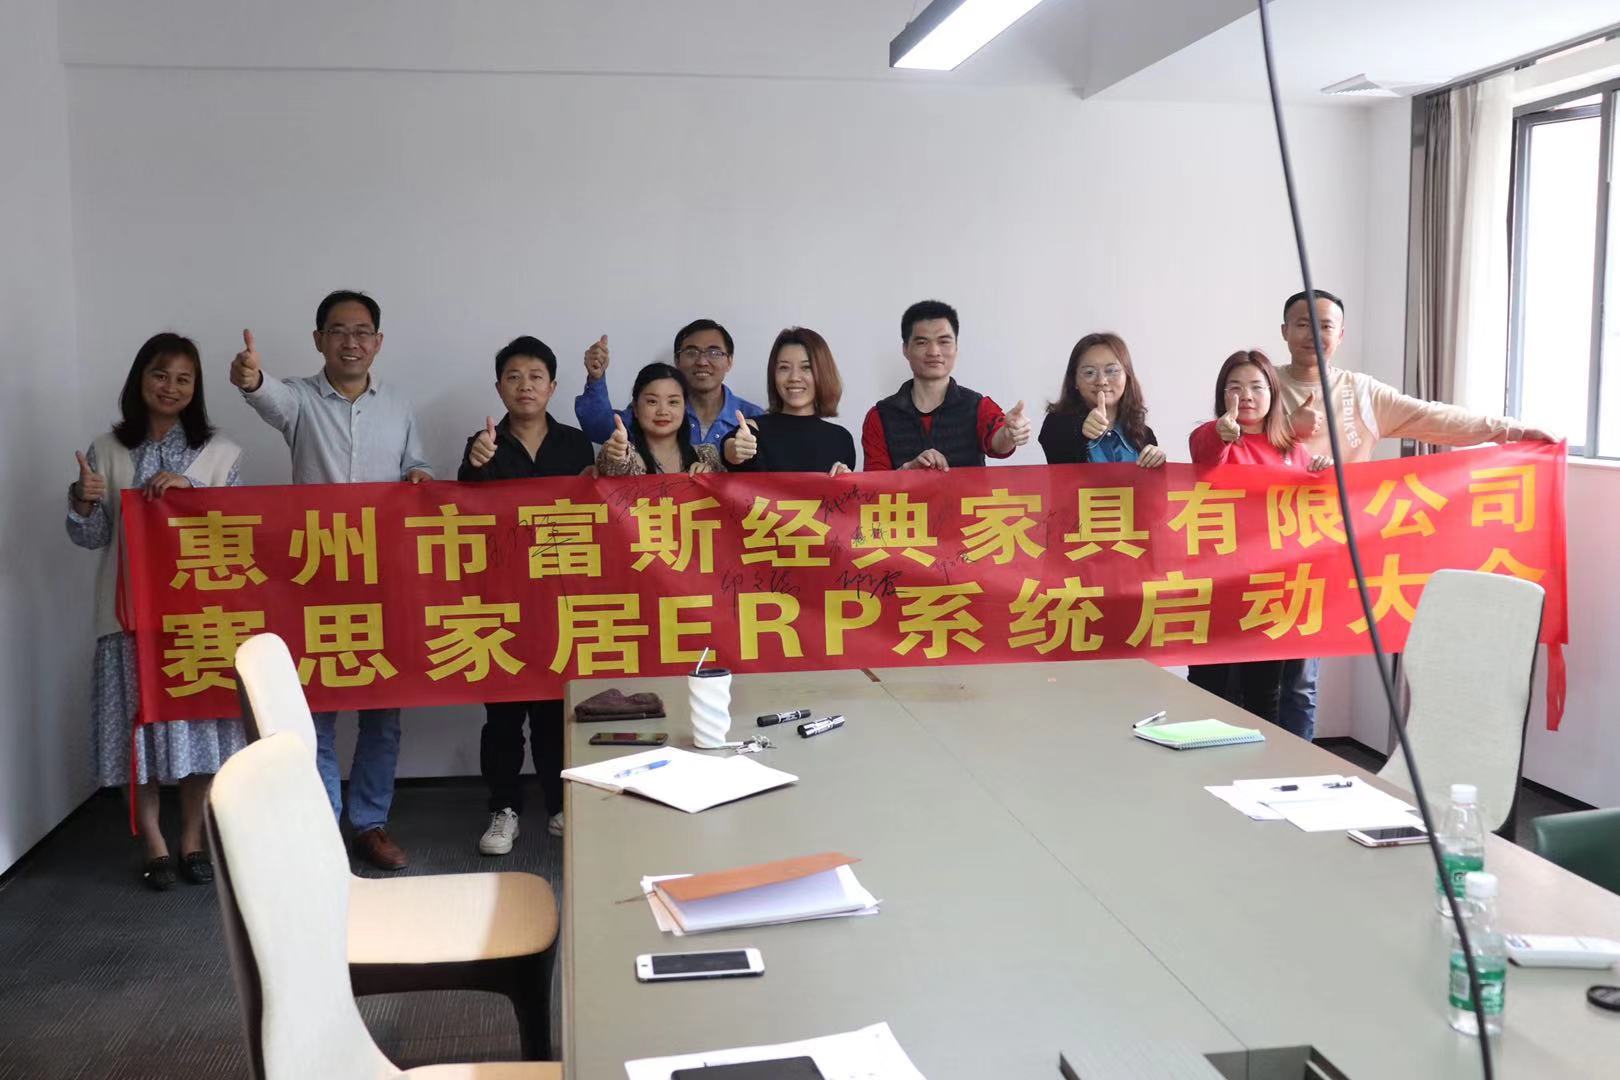 惠州市富斯经典家具有限公司赛思家居ERP系统正式启动